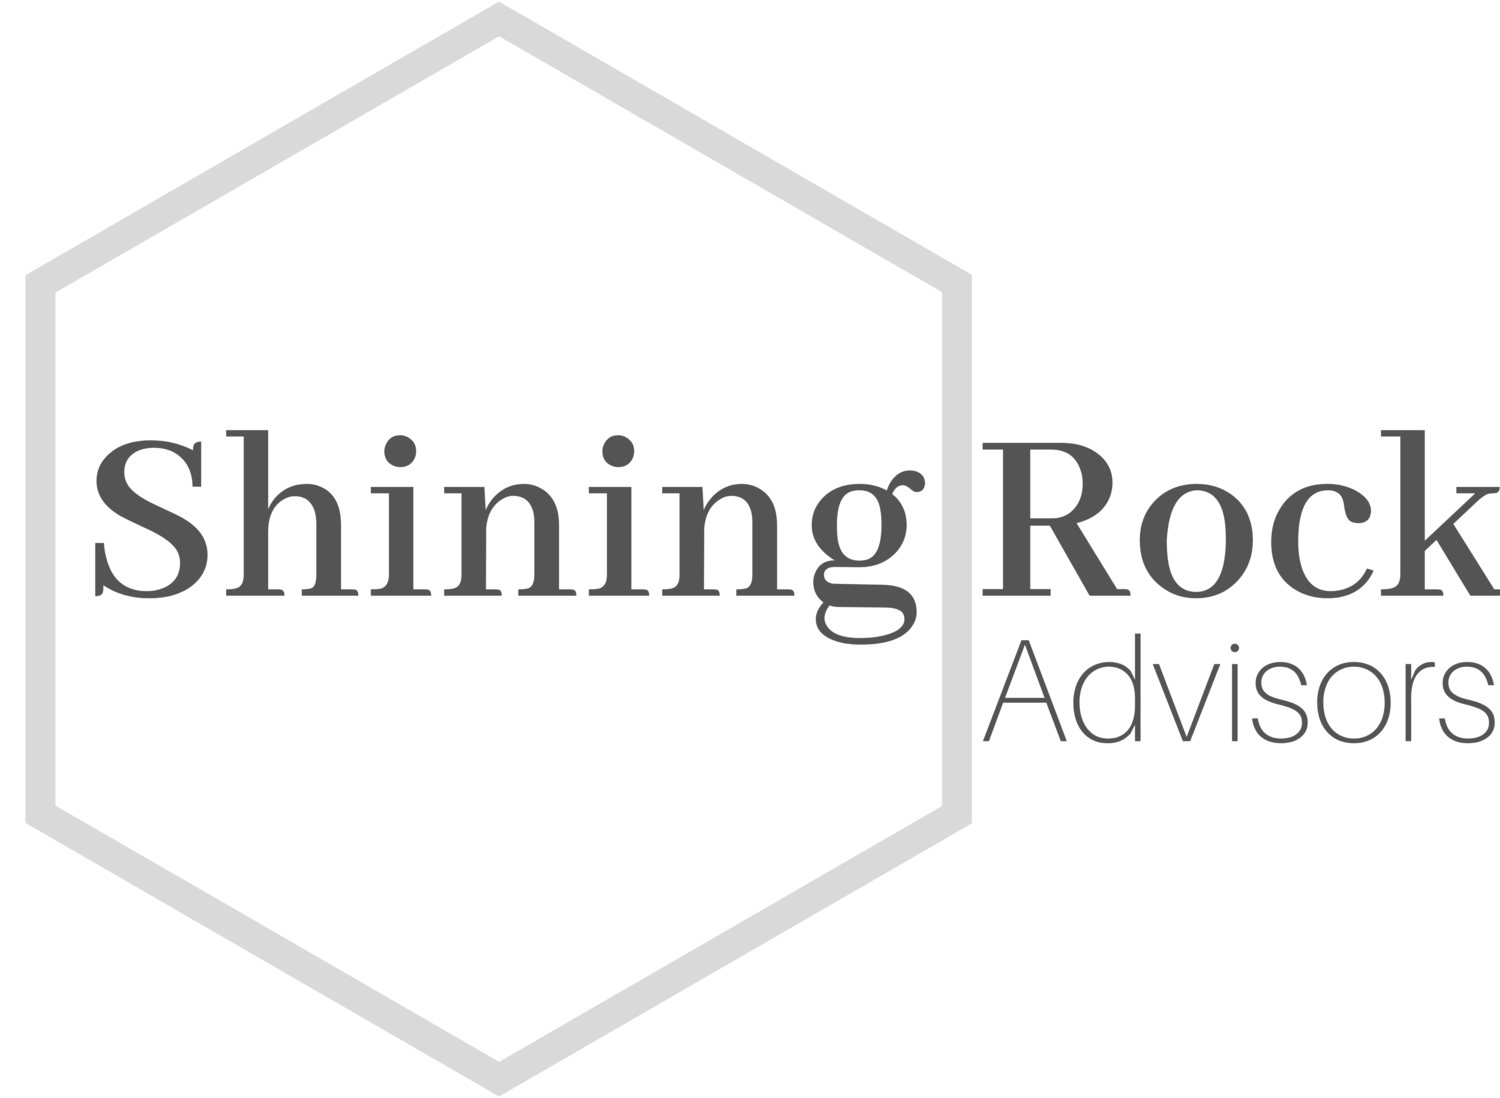 Shining Rock Advisors LLC